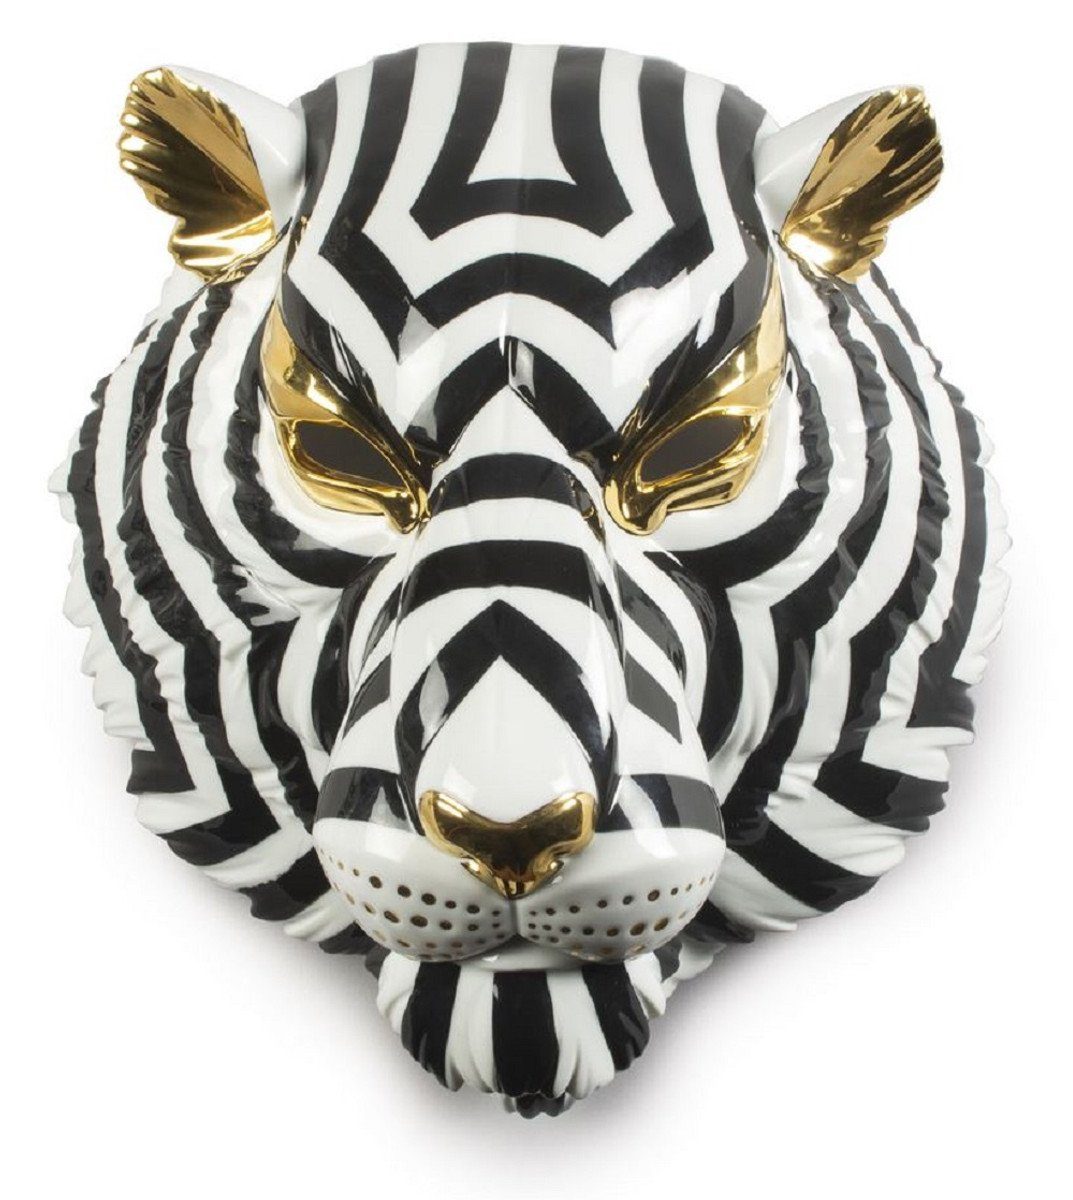 Casa Padrino Dekofigur Casa Padrino Luxus Porzellan Deko Maske Tiger Schwarz / Weiß / Gold 30 x 23 x H. 38 cm - Moderne handgefertigte Wanddeko - Erstklassische Qualität - Made in Spain